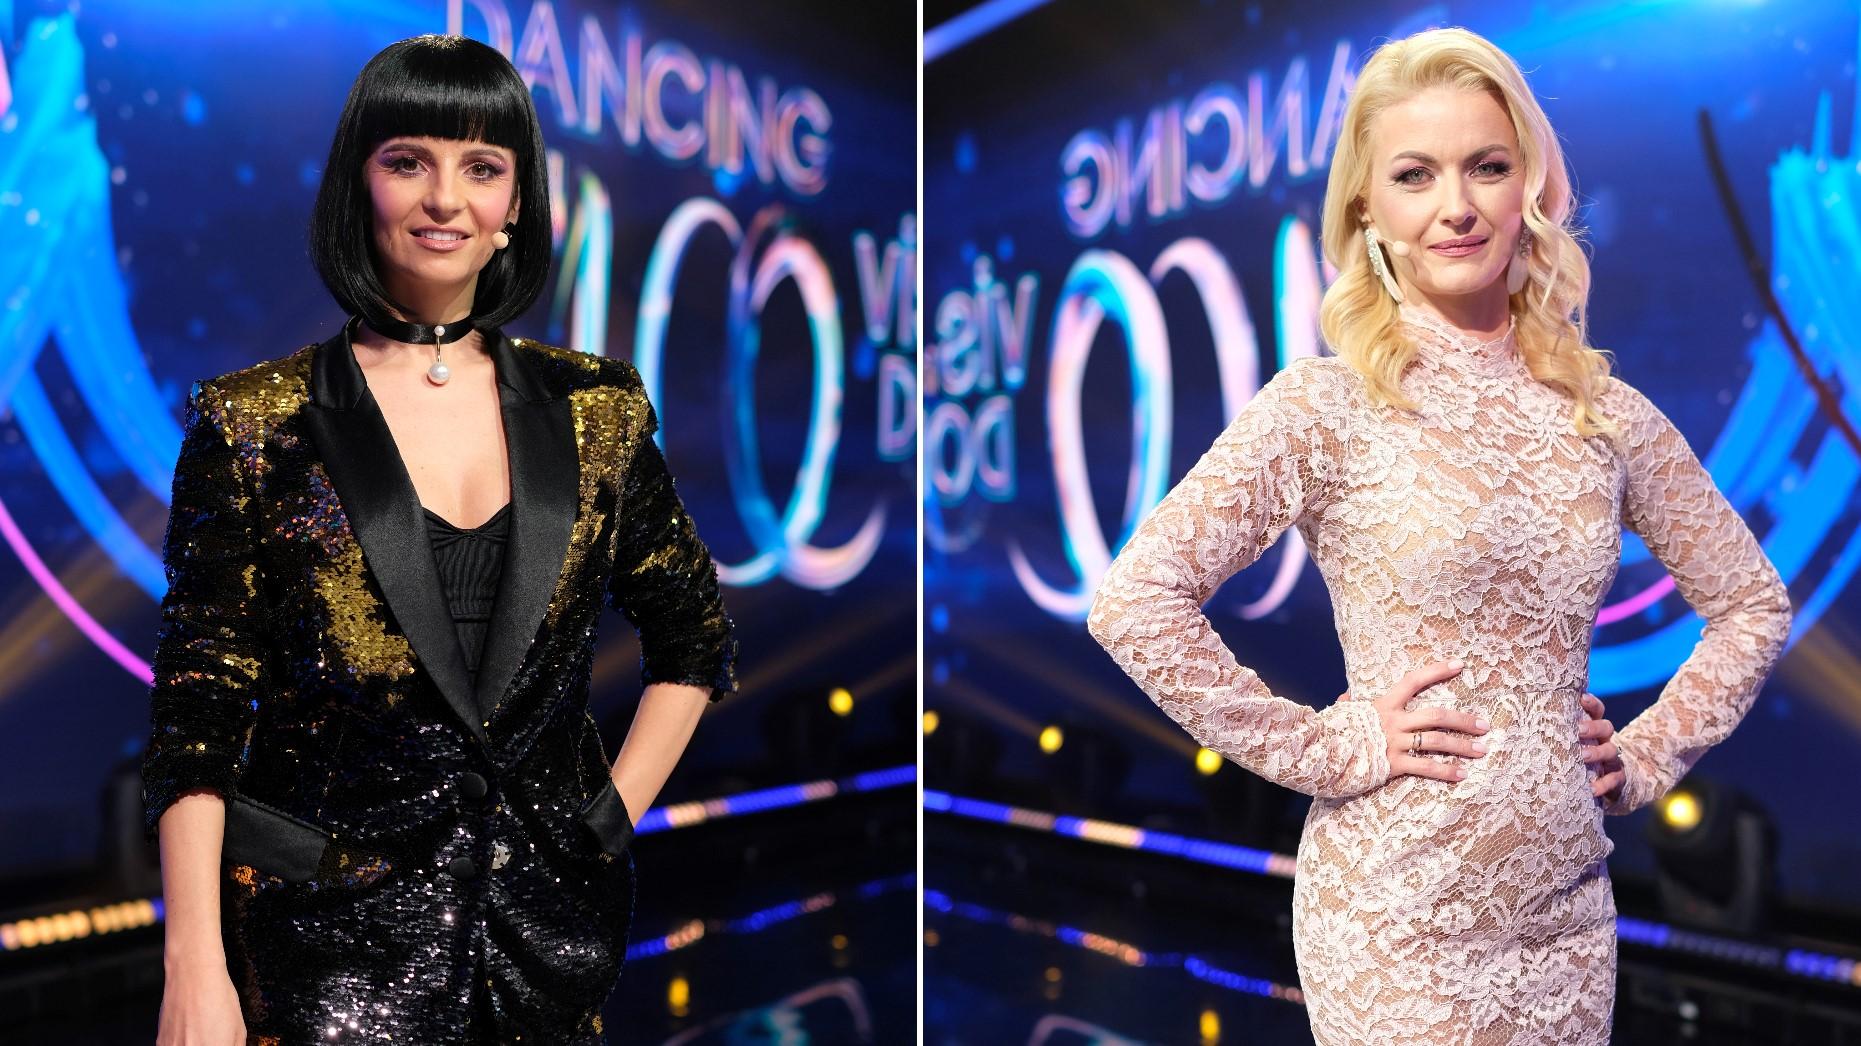 Dancing on Ice - Vis în doi, 16 aprilie 2022. Elwira Petre și Simona Pungă au purtat două rochii spectaculoase în semifinală